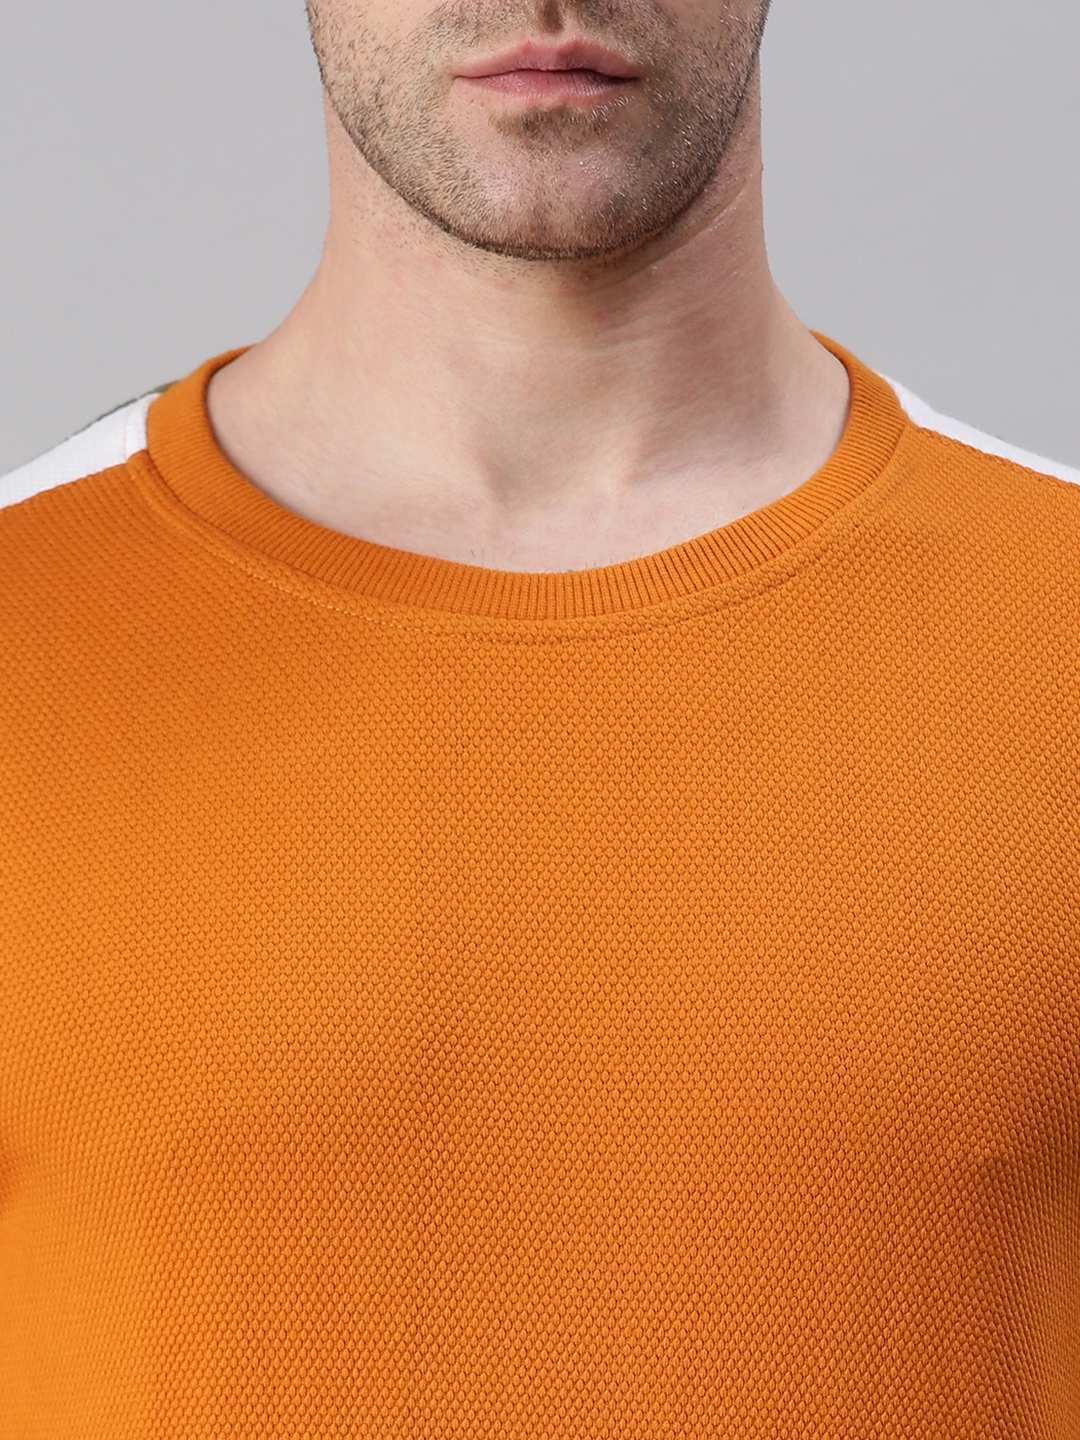 Men's Orange Cotton Blend Solid Sweatshirts